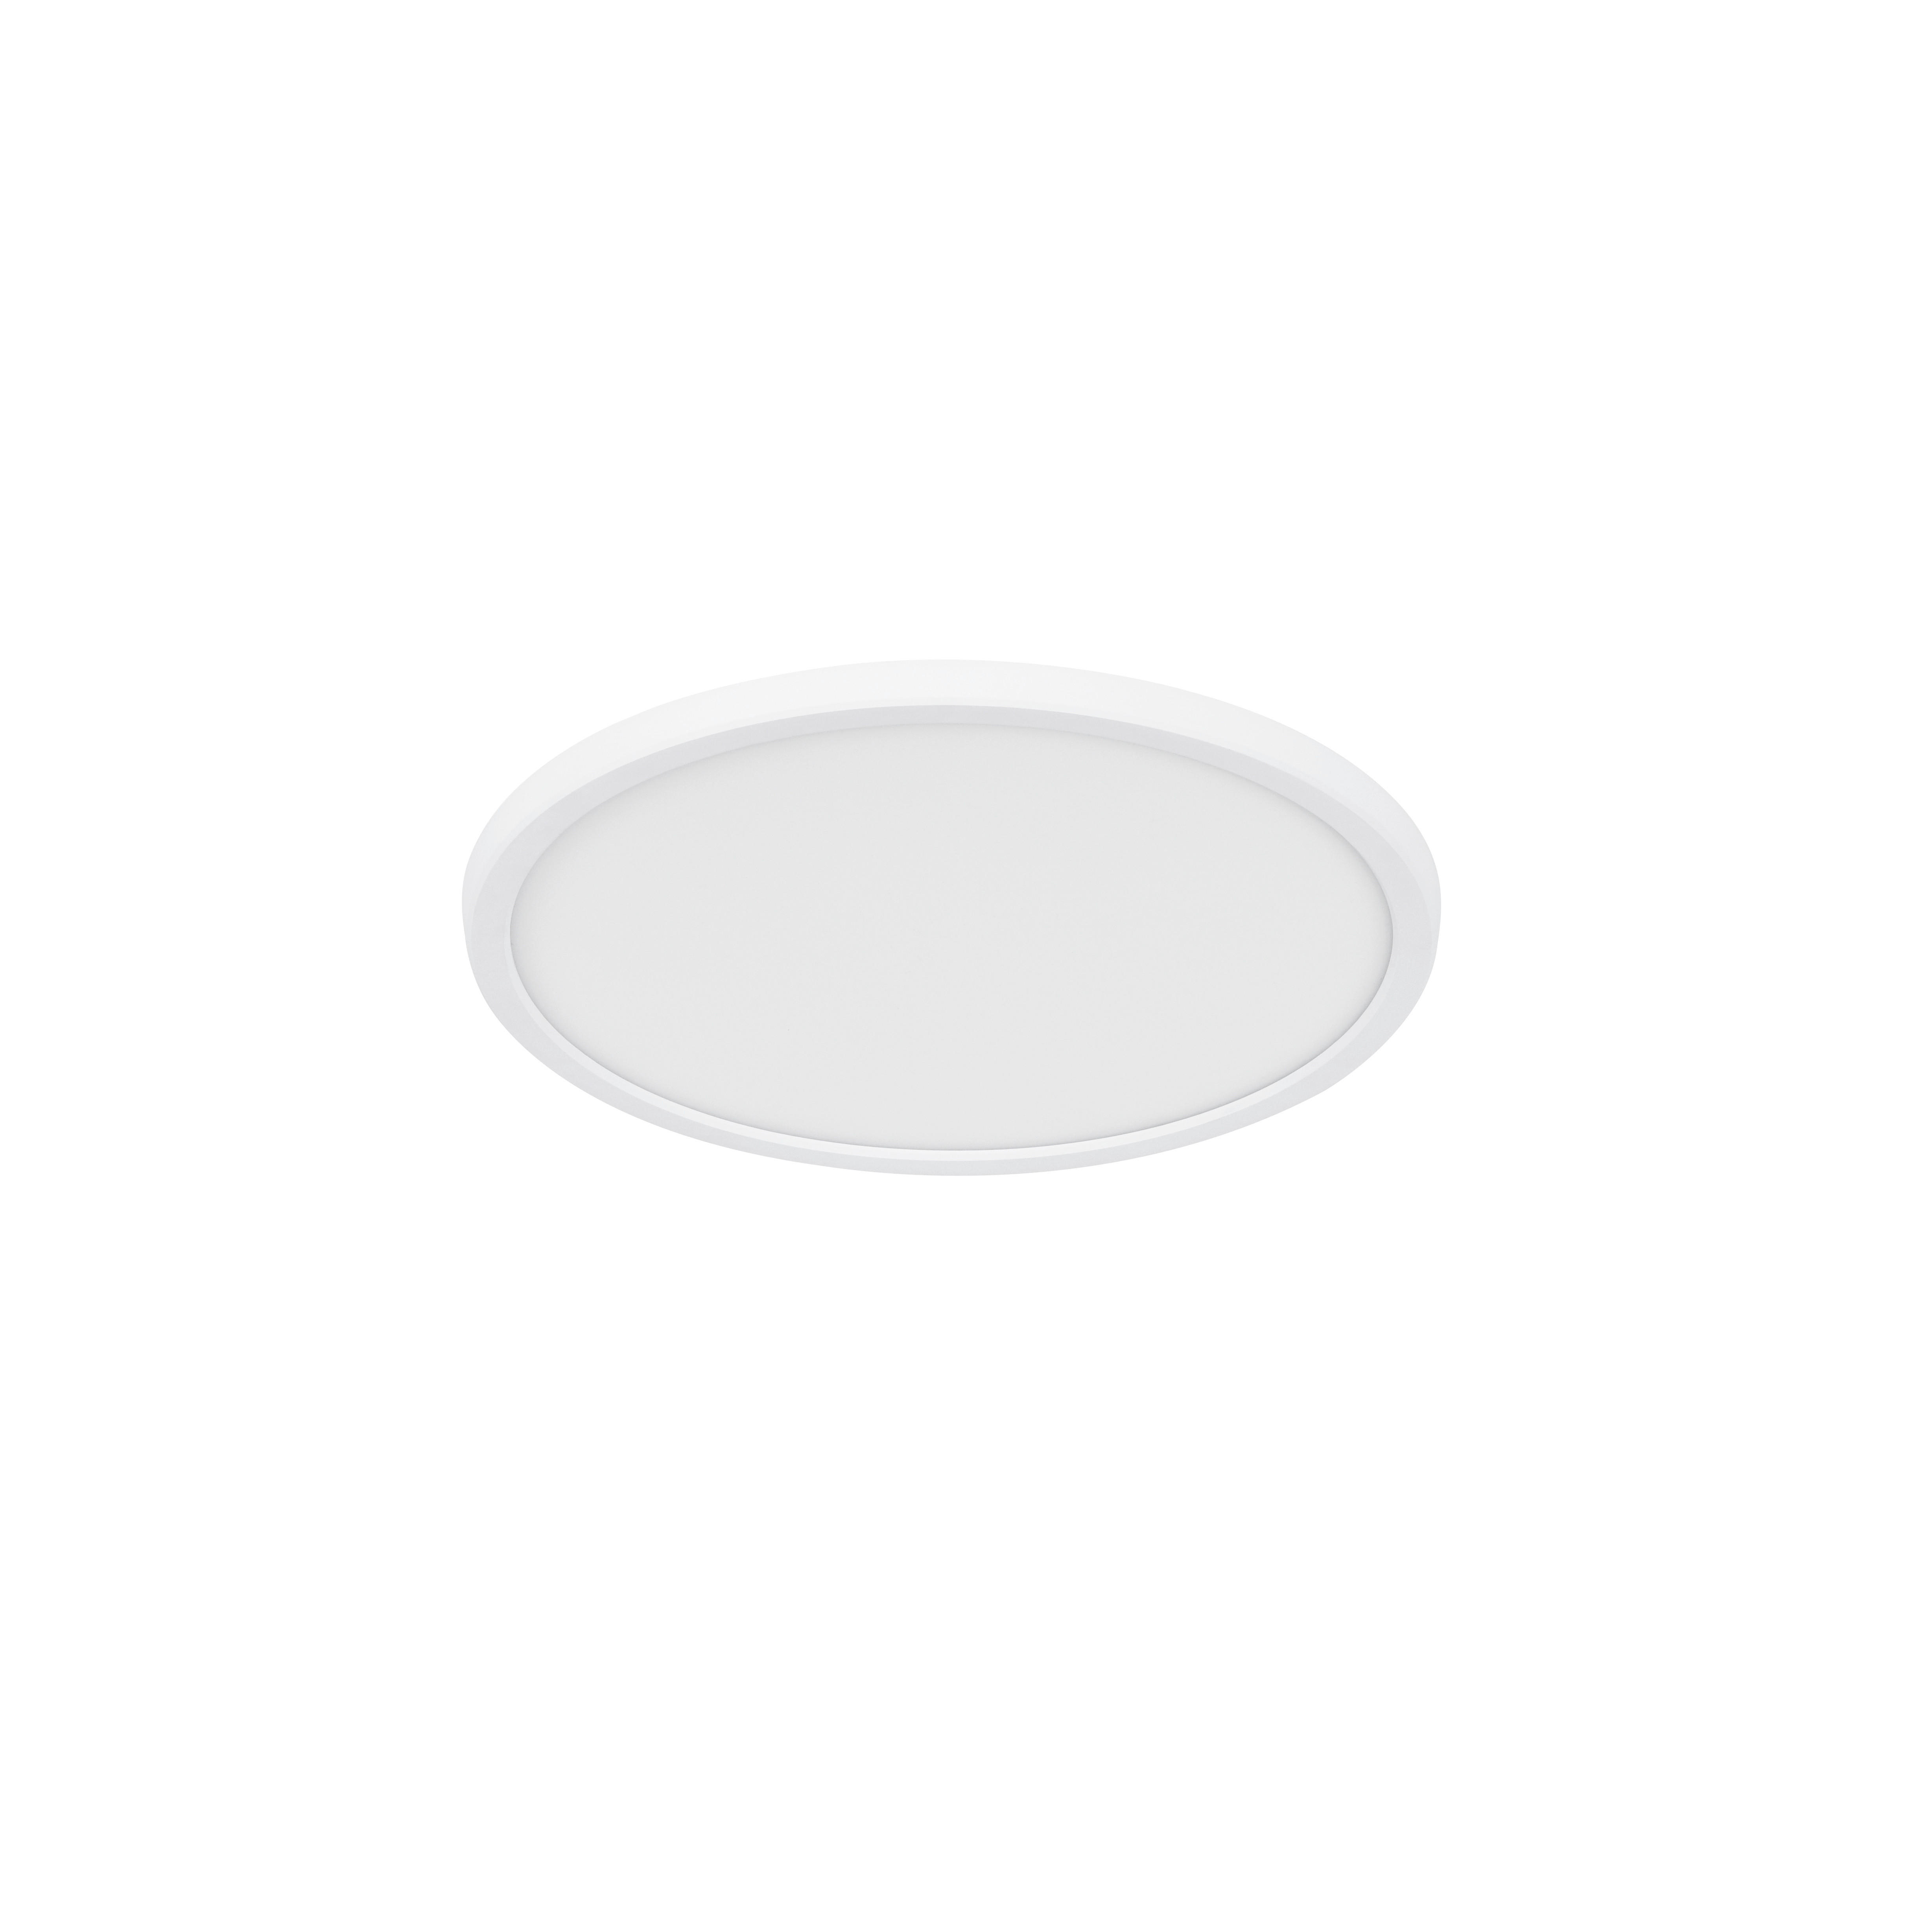 DECKENLEUCHTE Oja 29,4/3,8 cm   - Weiß, Basics, Kunststoff (29,4/3,8cm) - Nordlux